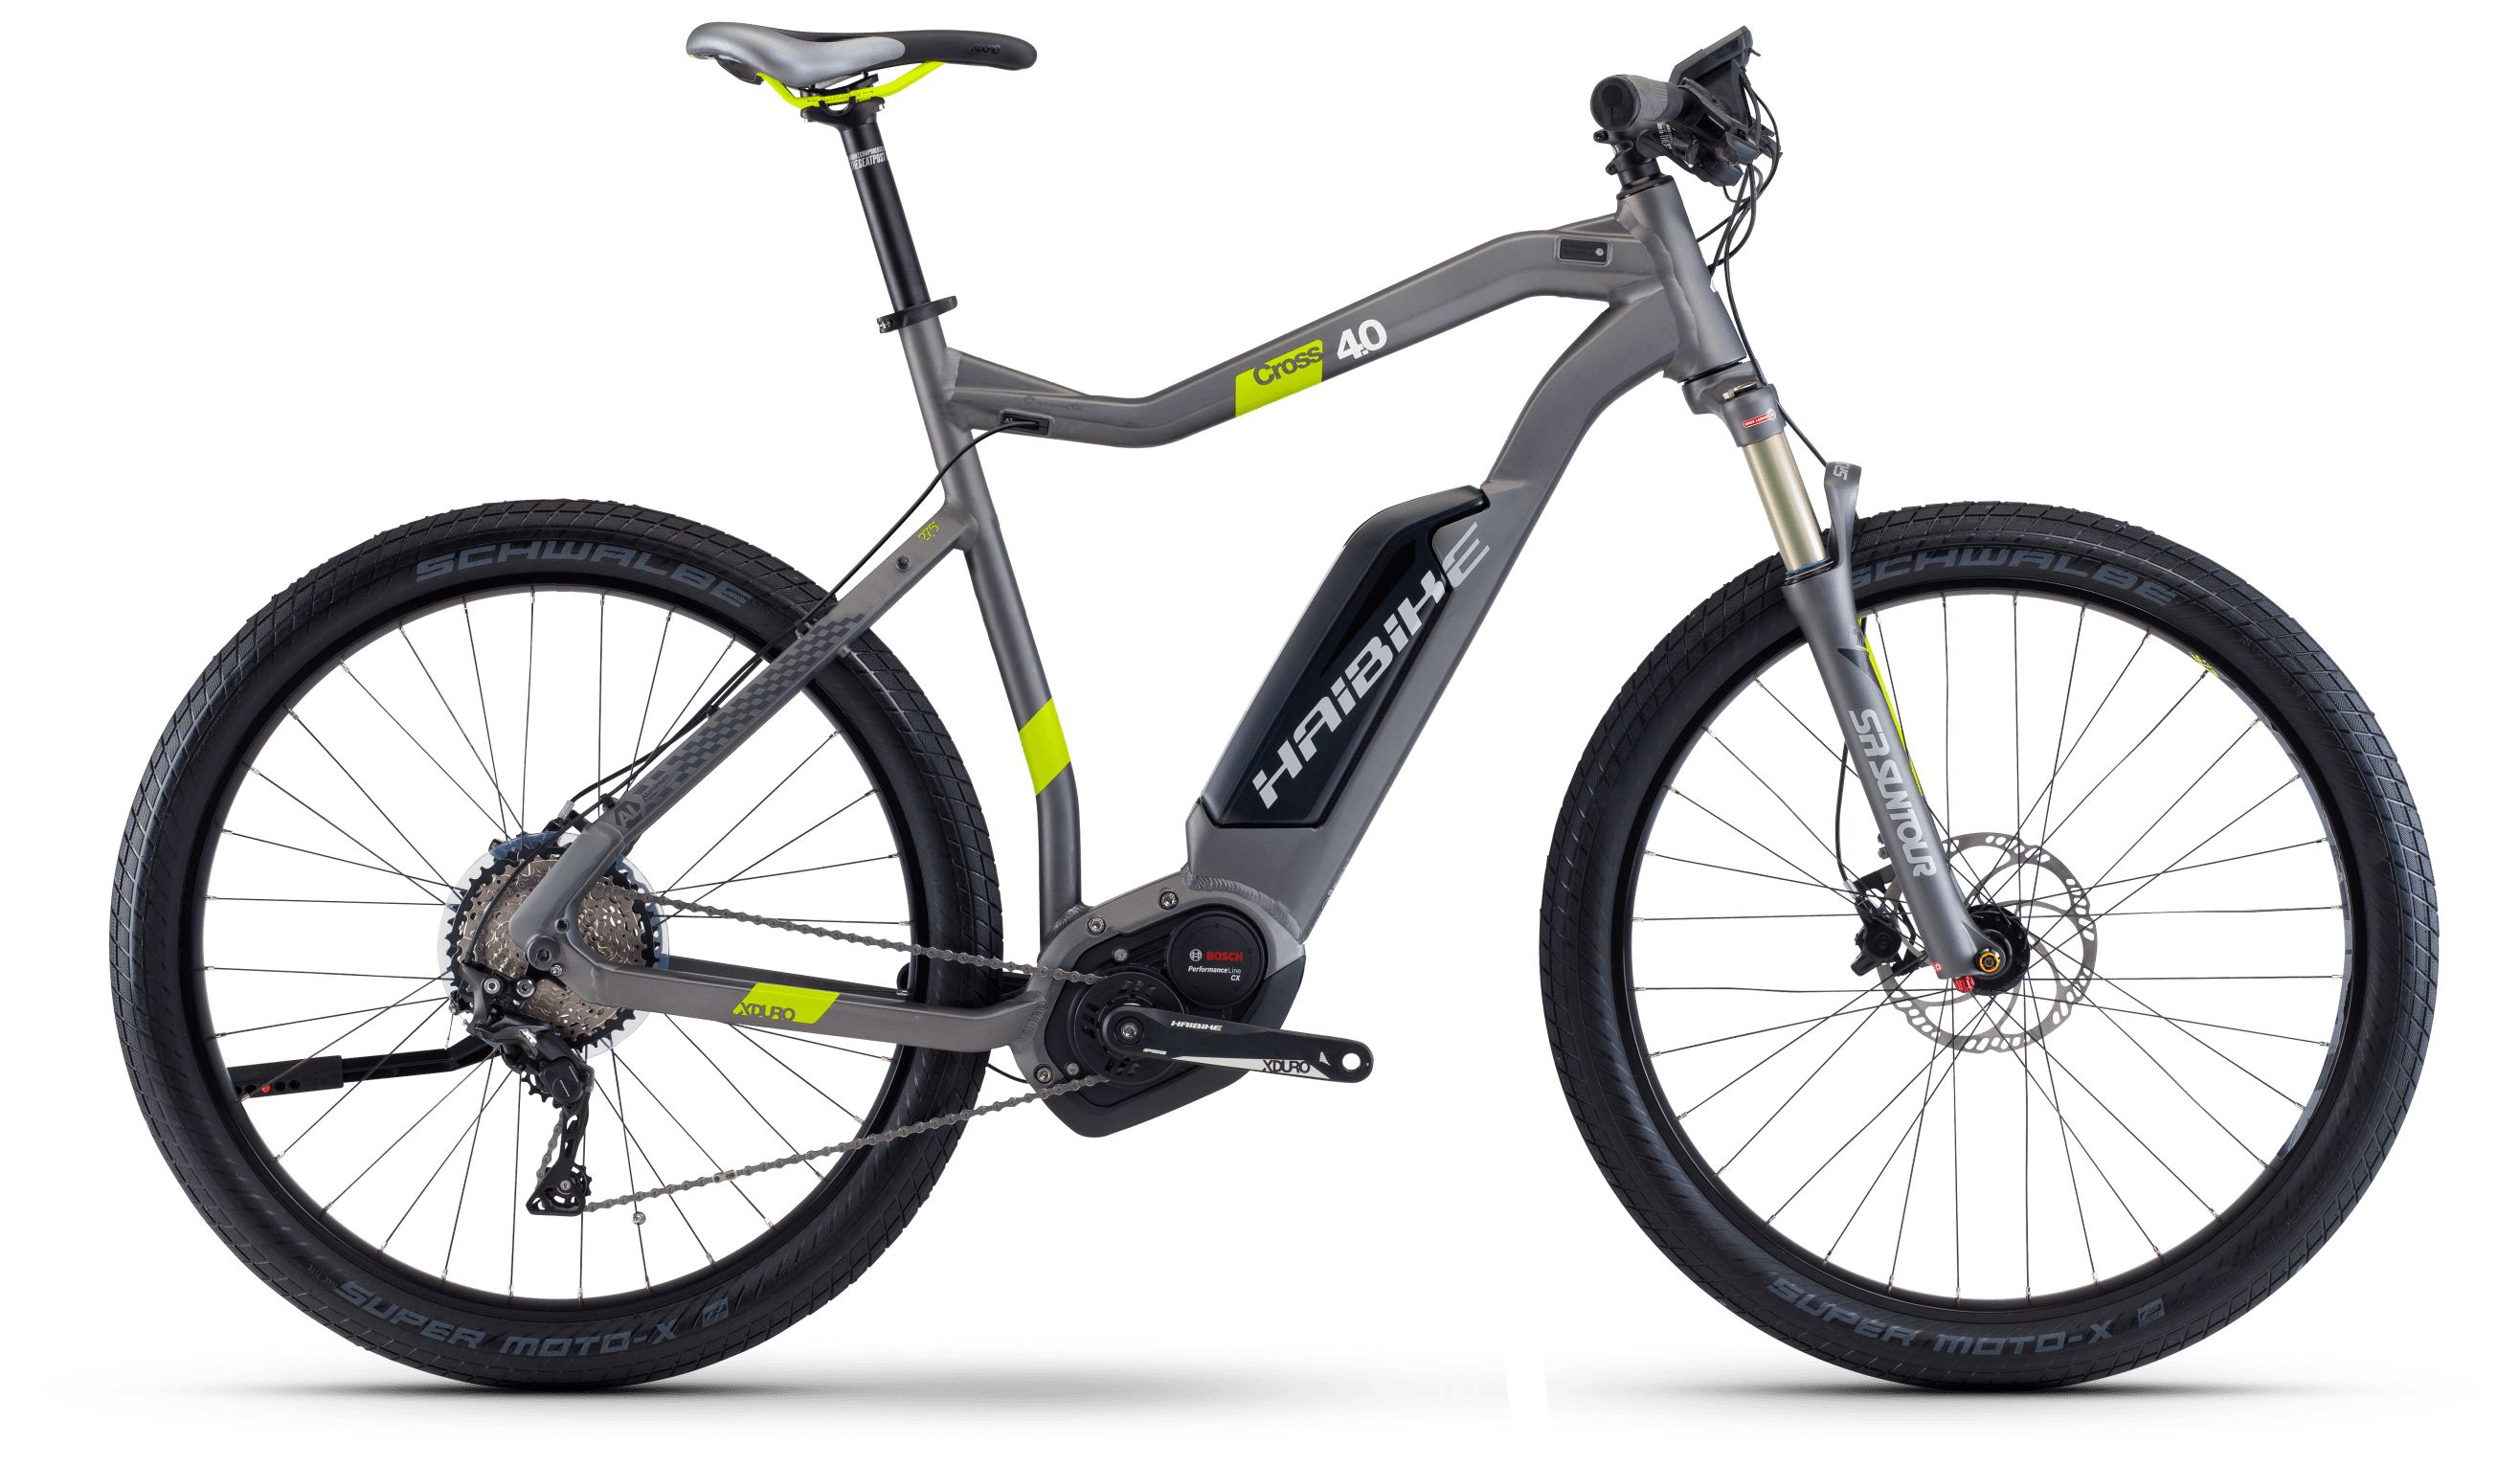  Отзывы о Горном велосипеде Haibike Xduro Cross 4.0 500Wh 2017